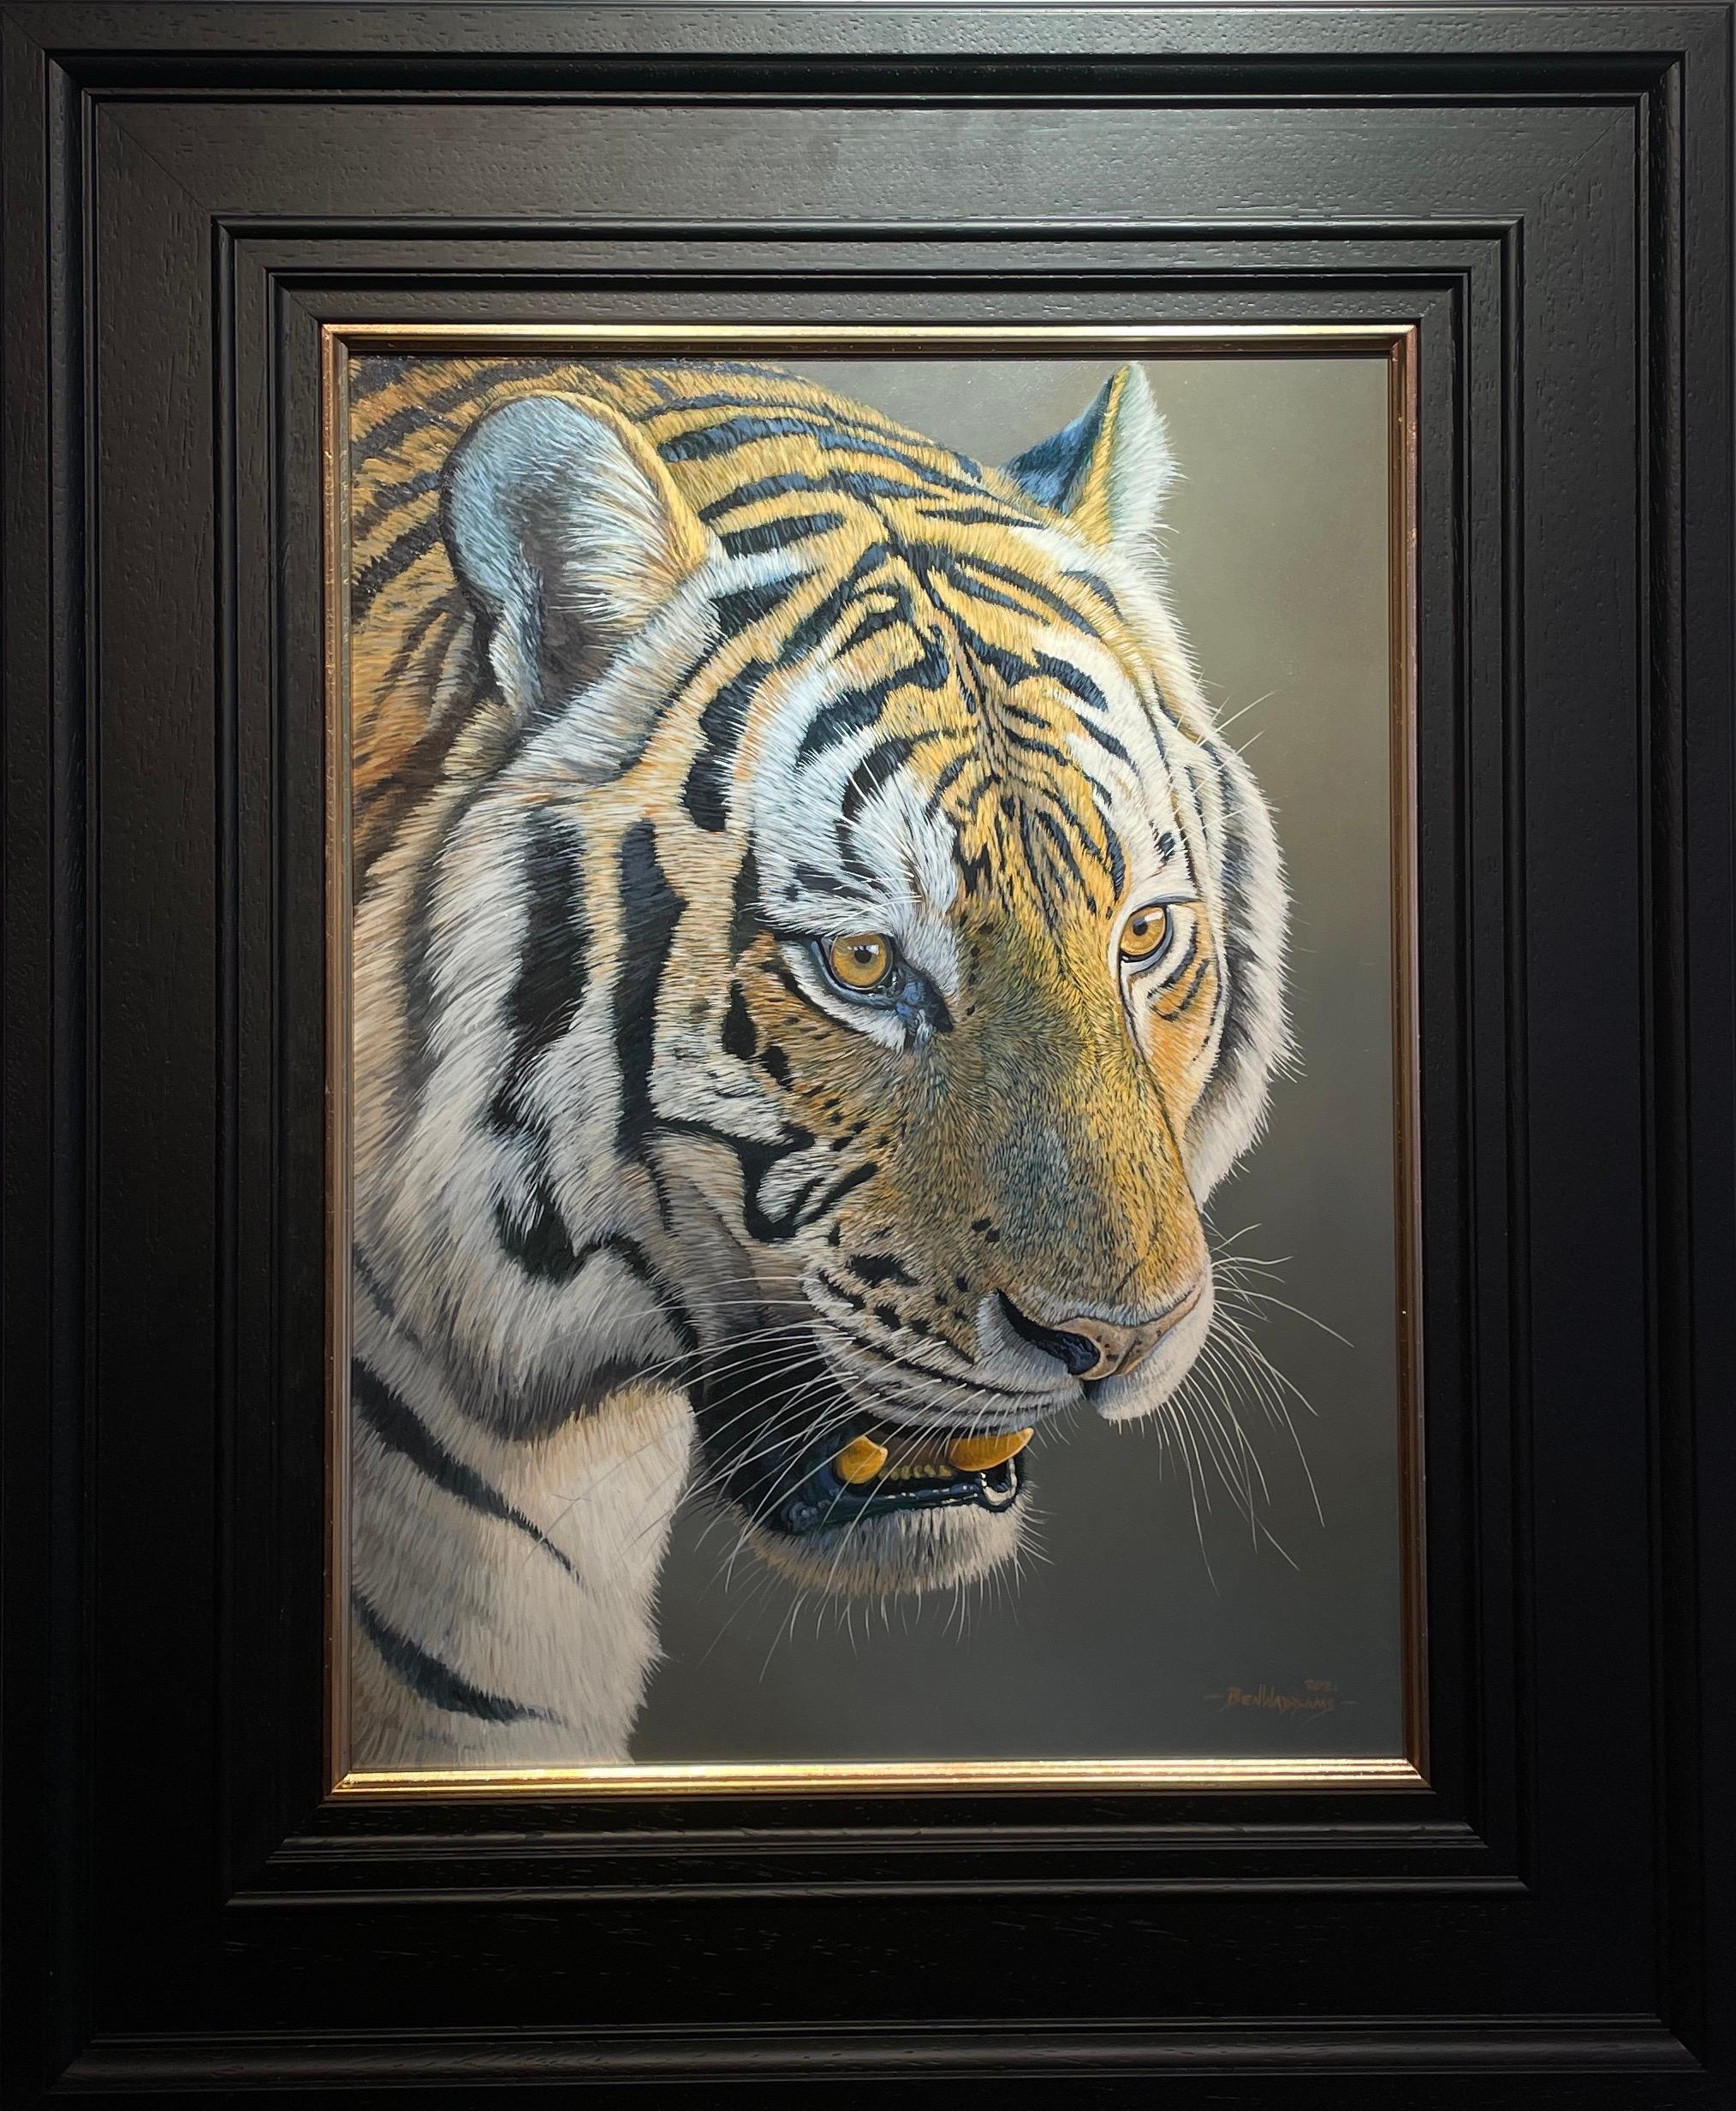 Fotorealistisches Gemälde eines Tigers, bereit zum Ausbreiten, in Orange, Grau und Schwarz